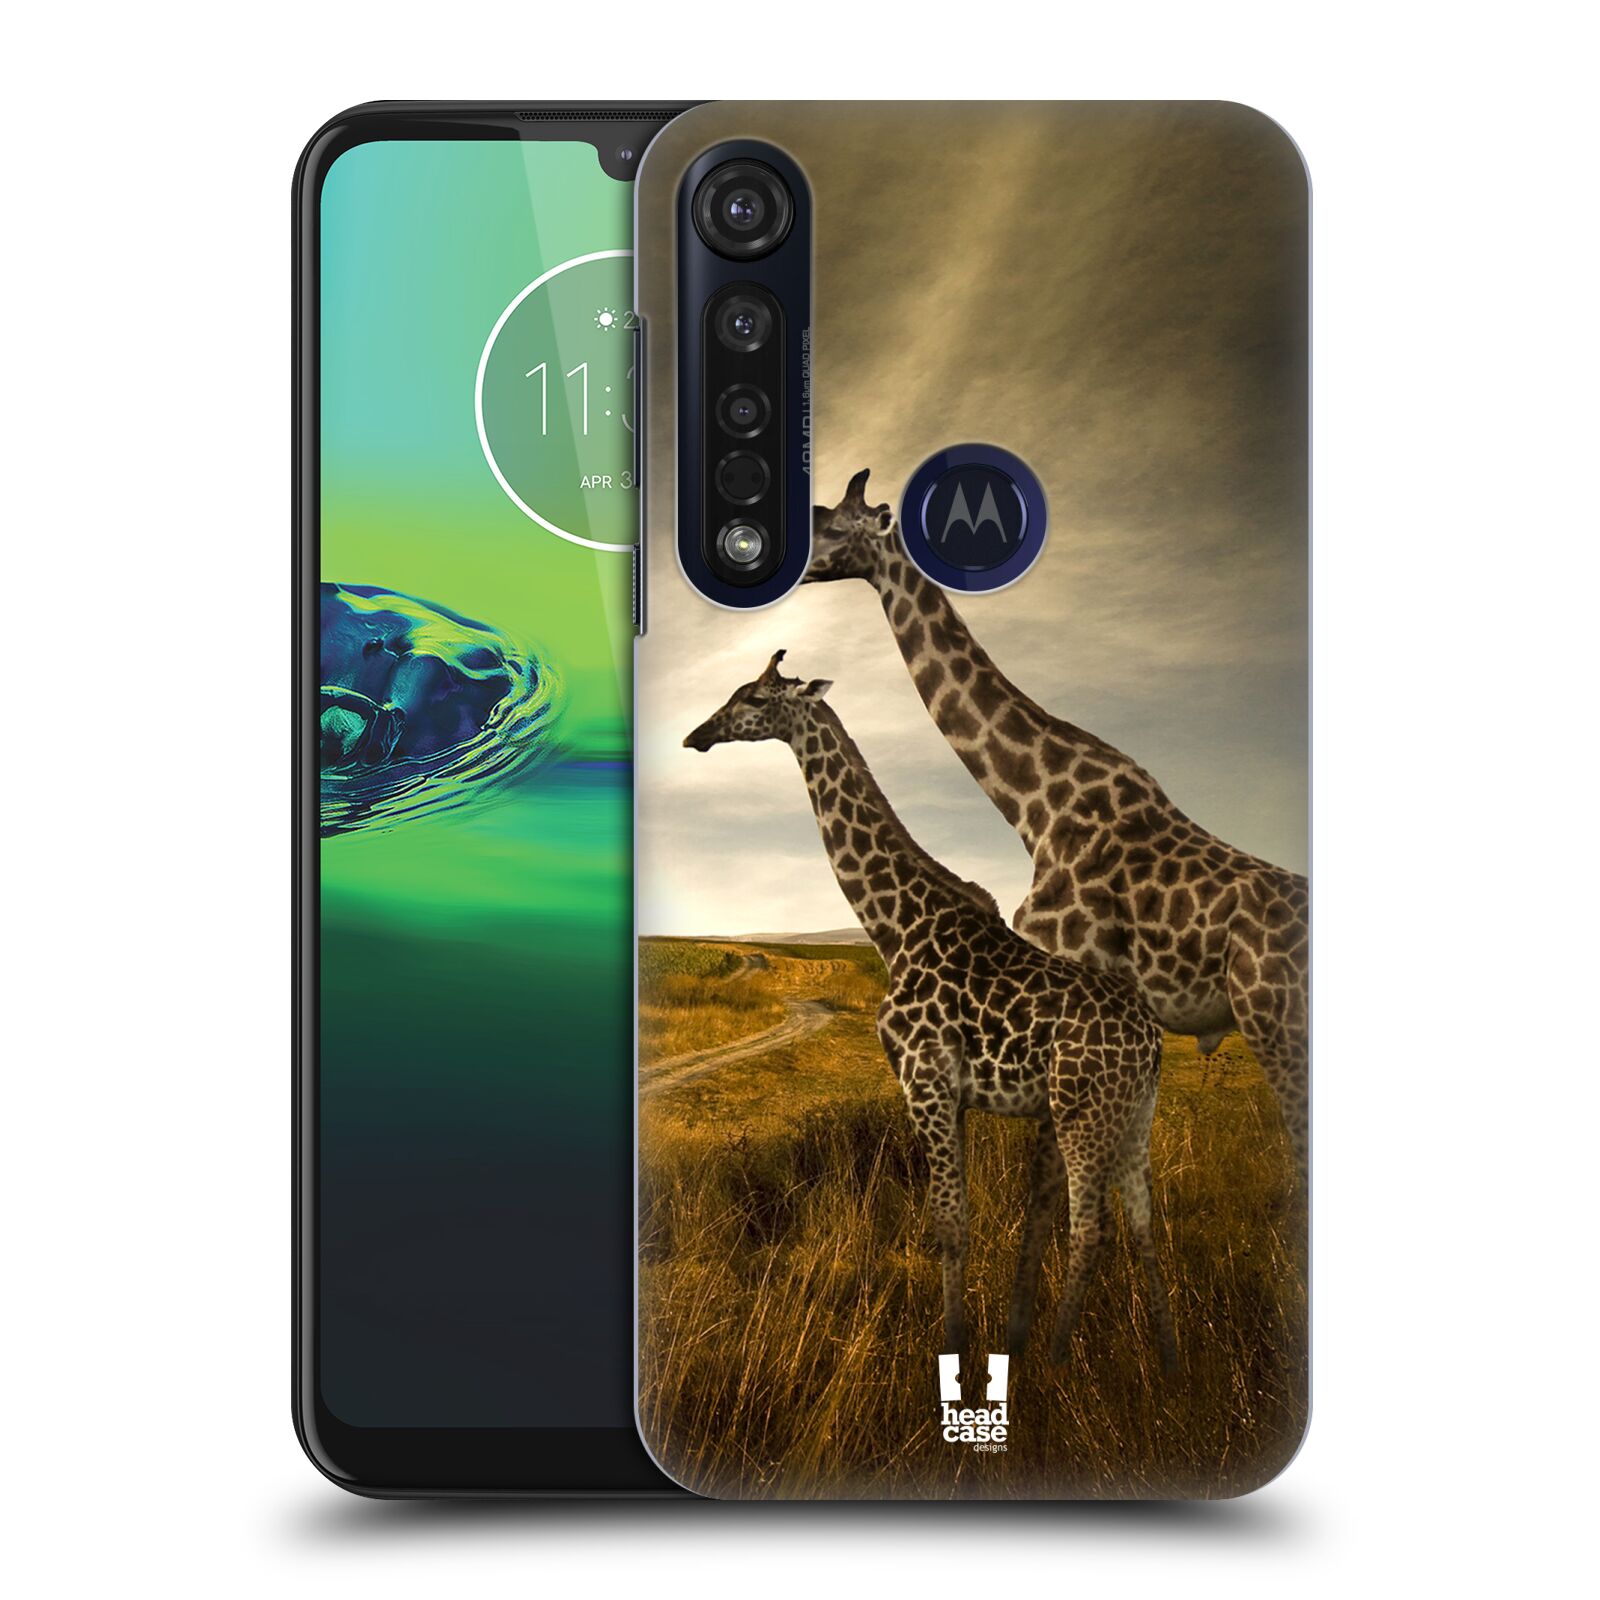 Pouzdro na mobil Motorola Moto G8 PLUS - HEAD CASE - vzor Divočina, Divoký život a zvířata foto AFRIKA ŽIRAFY VÝHLED